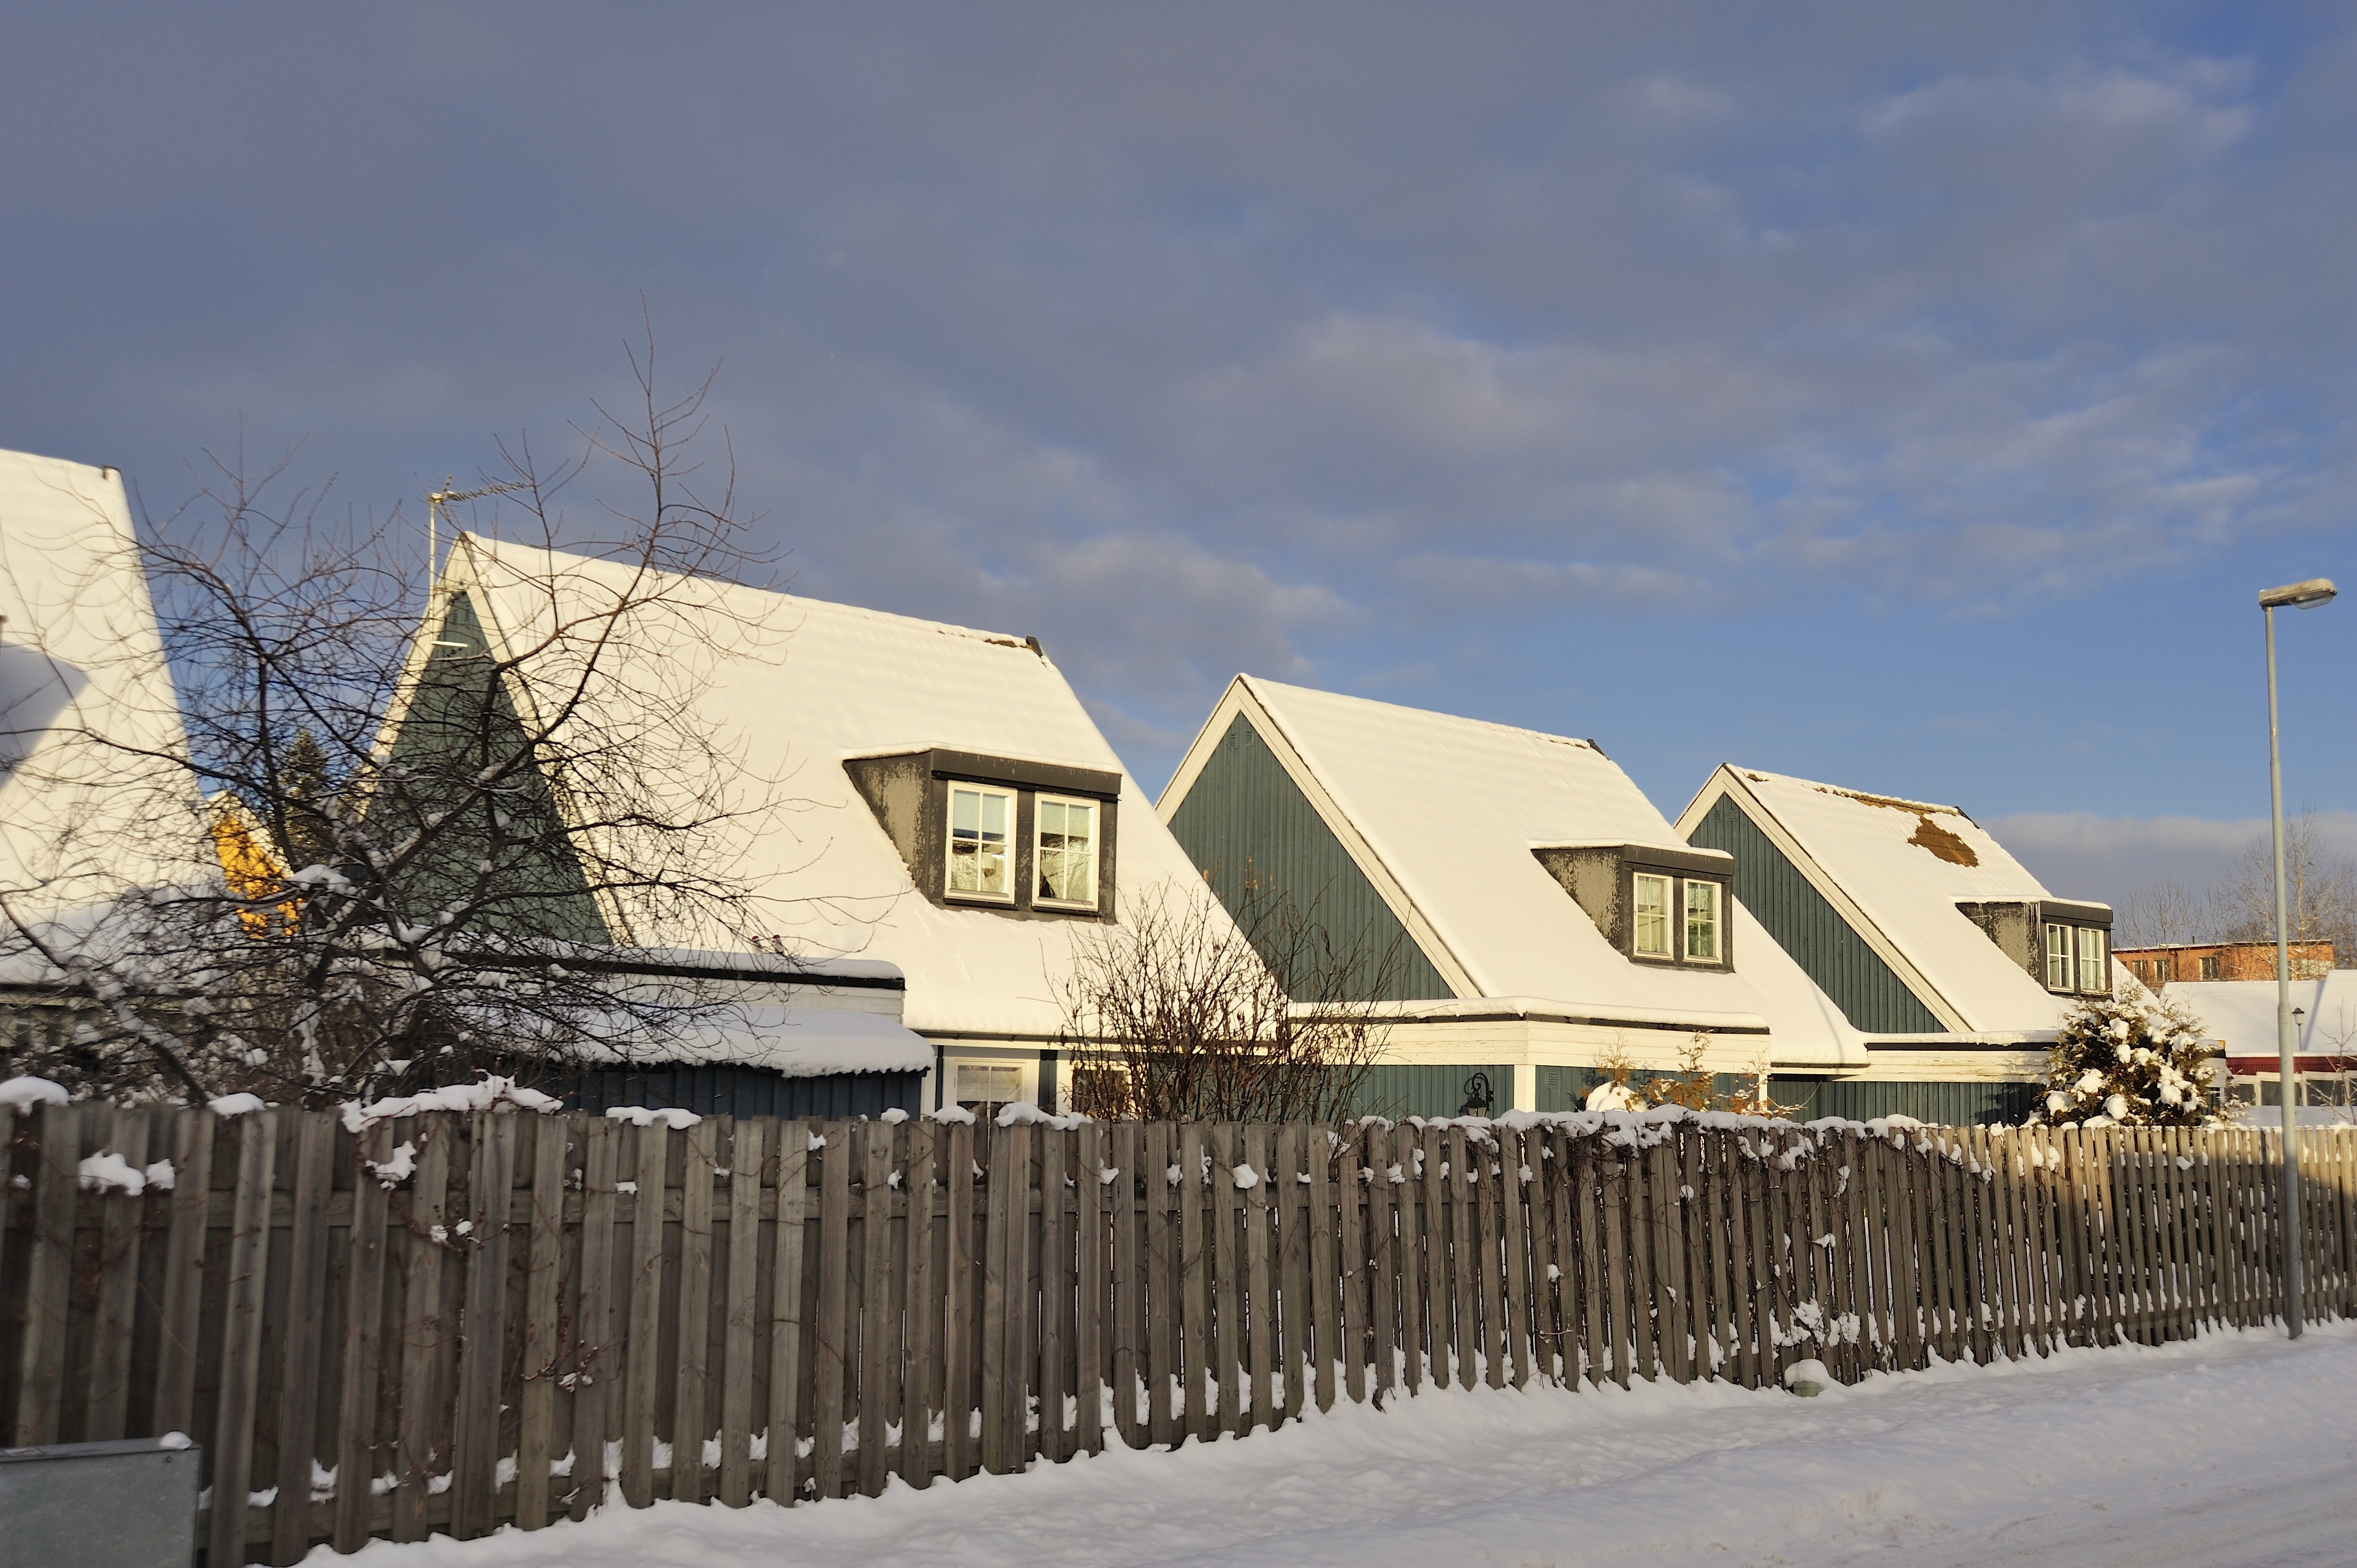 Tvist med grannar, villor i snö - Lexly.se